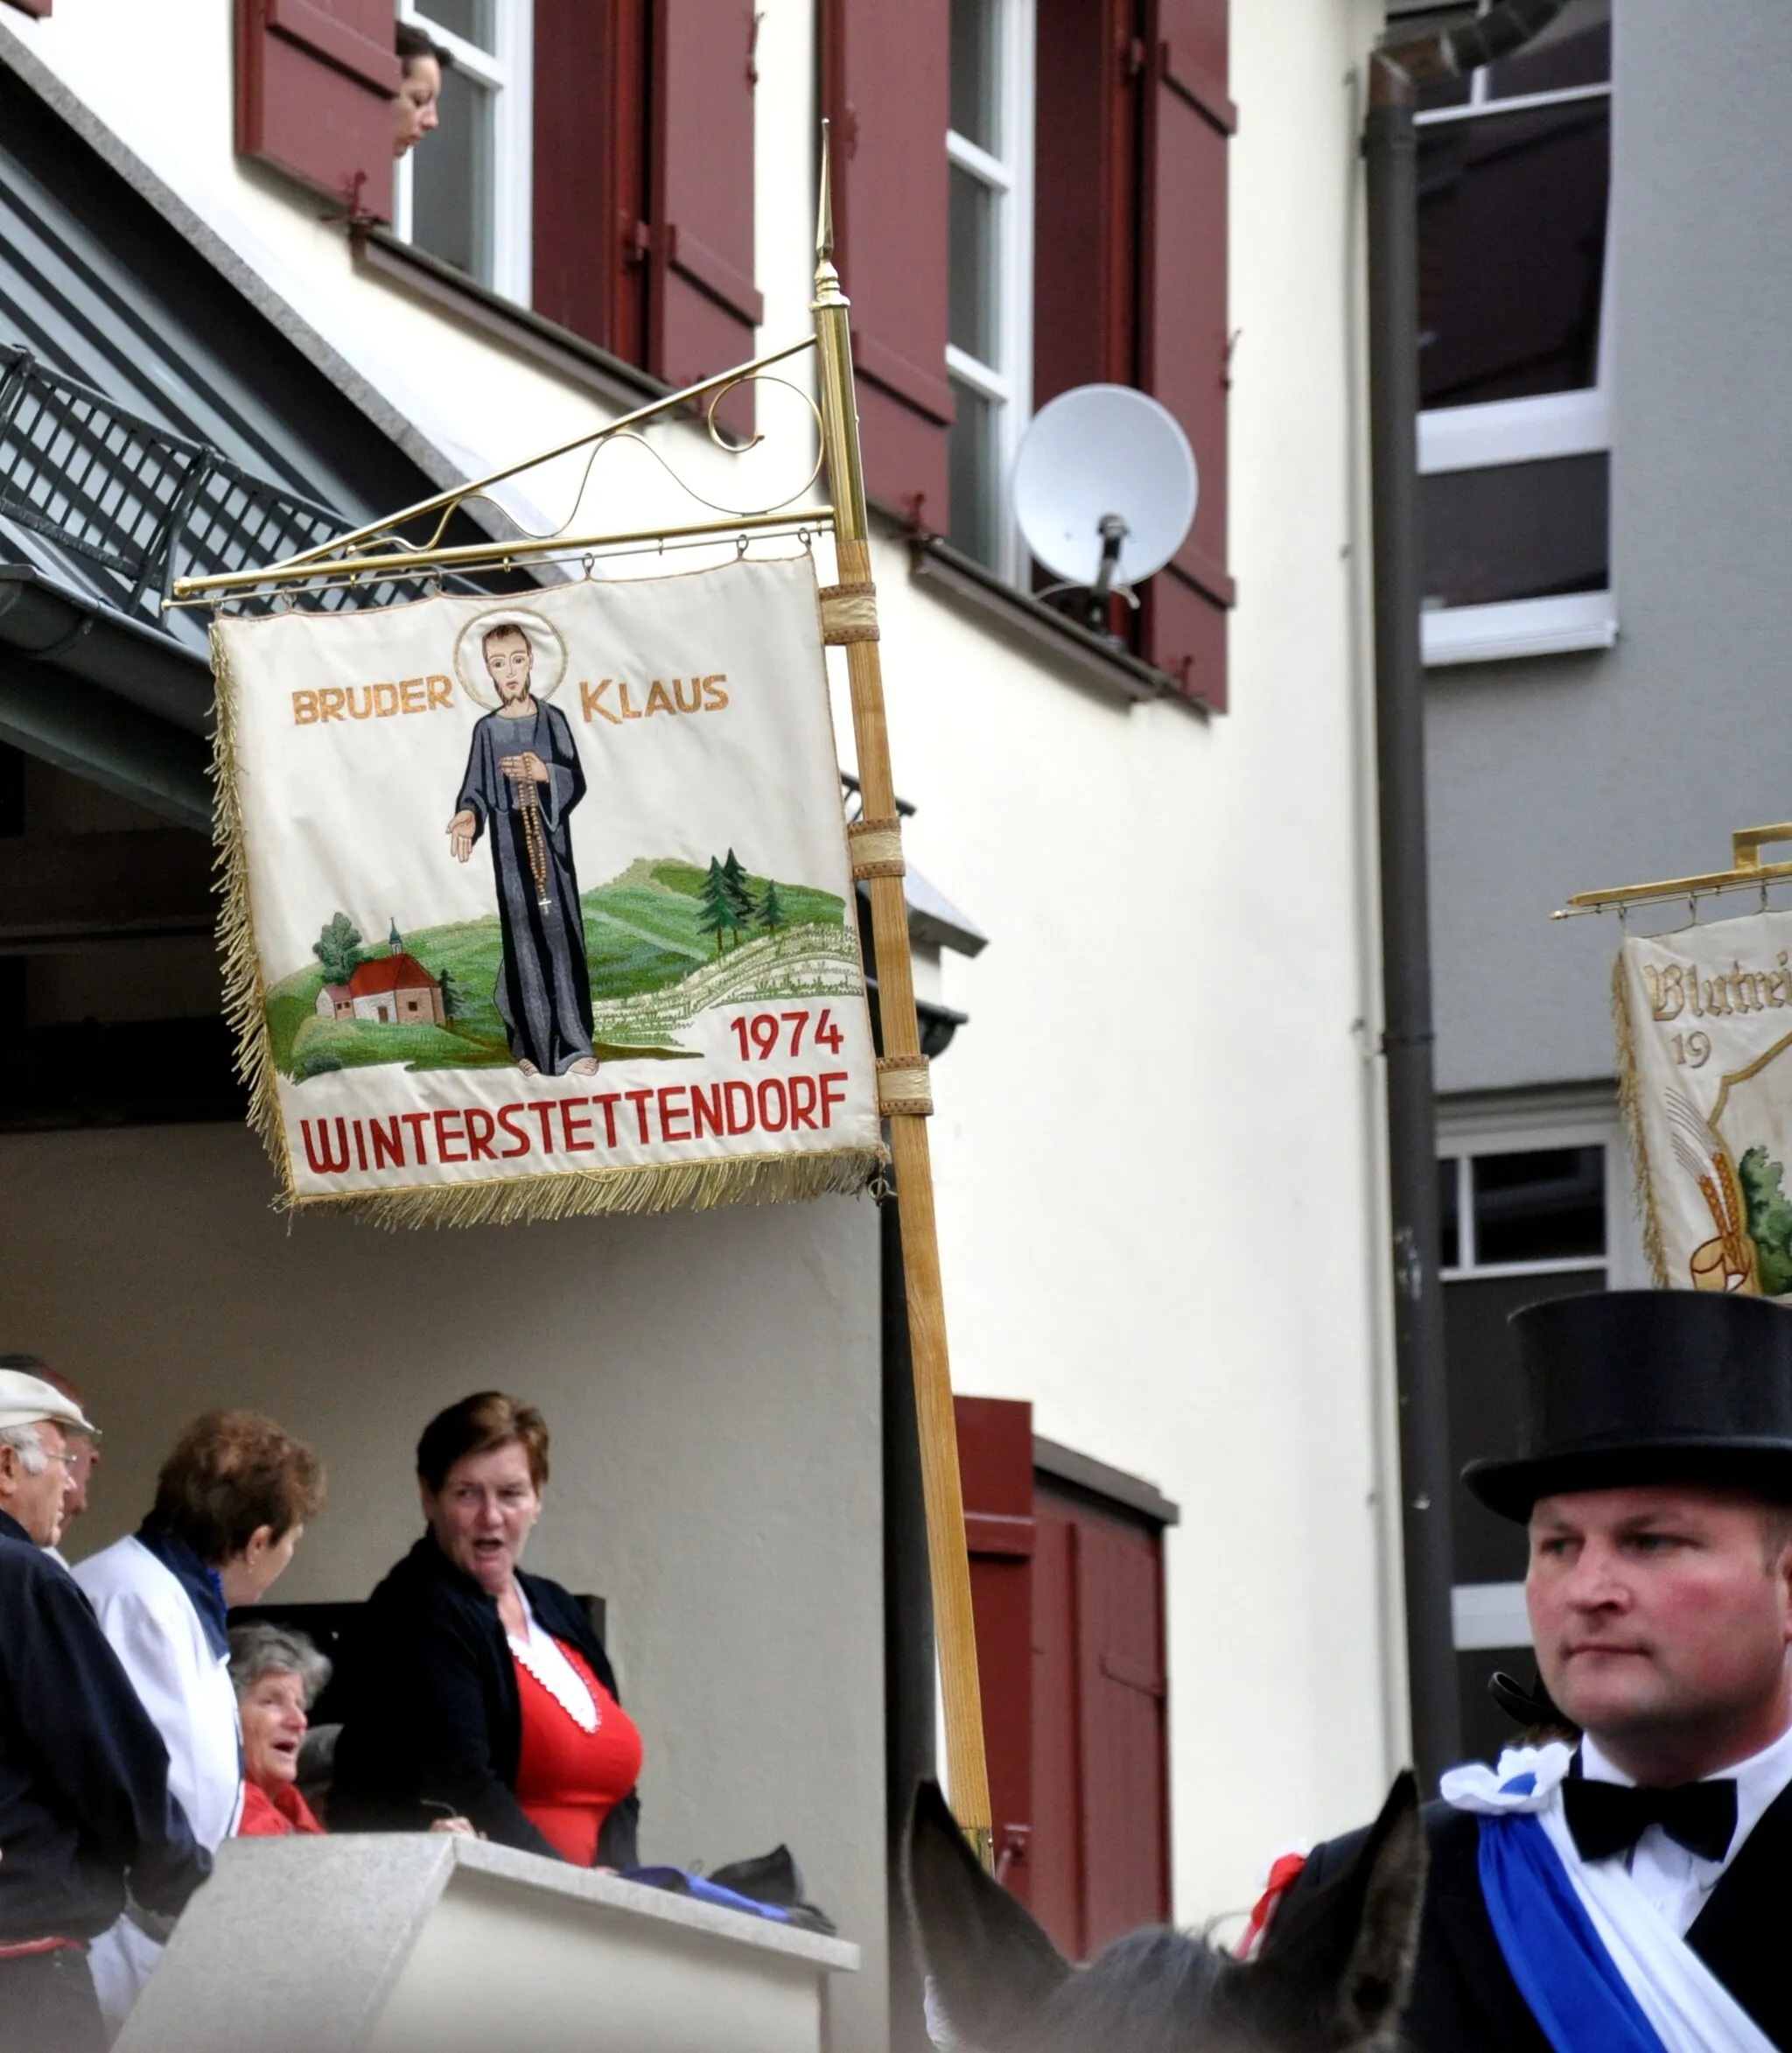 Photo showing: Weingarten, Blutritt 2011, Blutreitergruppe Winterstettendorf, Fahne mit Bruder Klaus